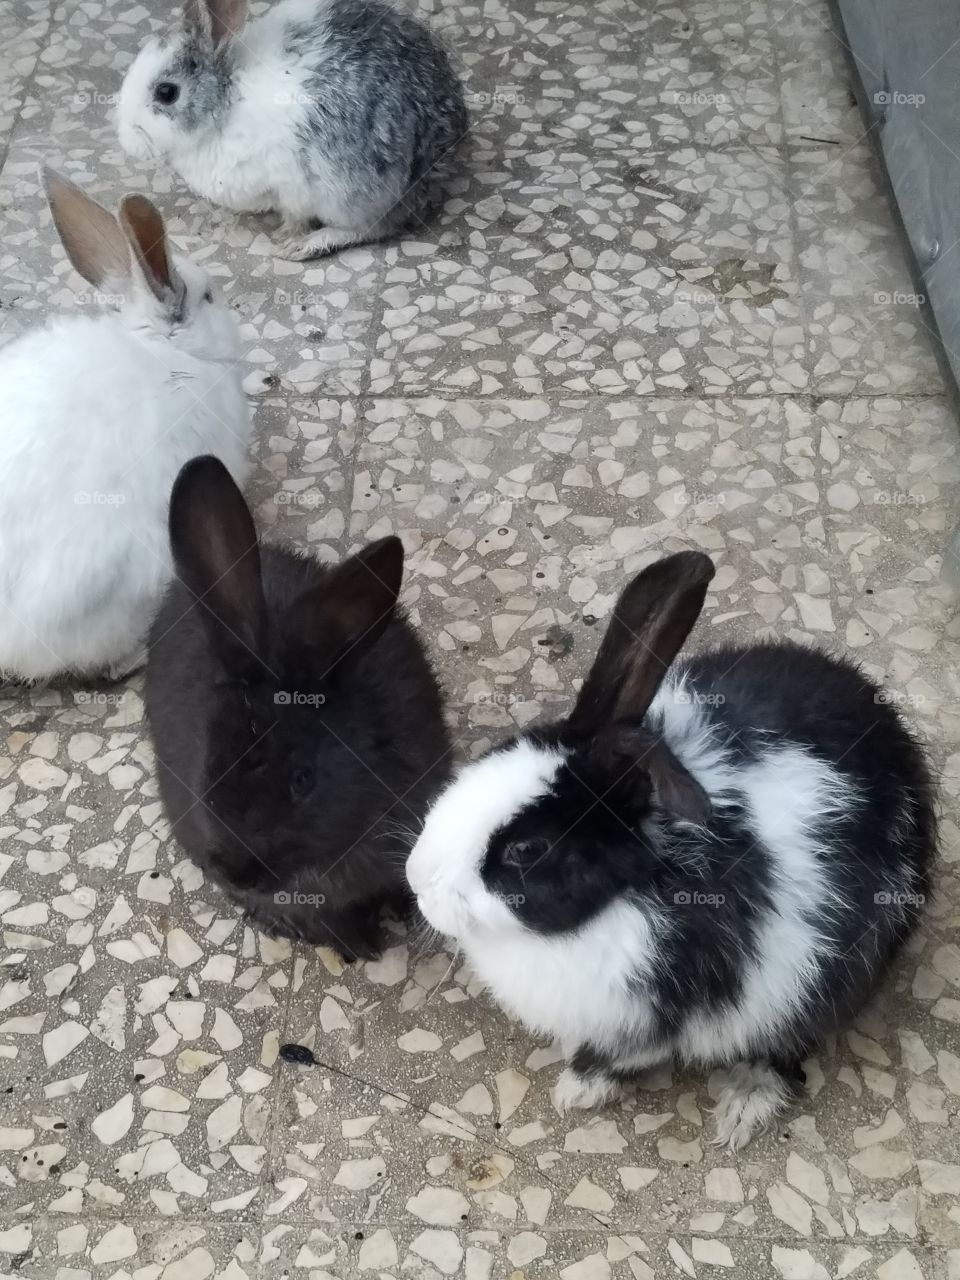 Rabbit, Bunny, Hare, Downy, Cute